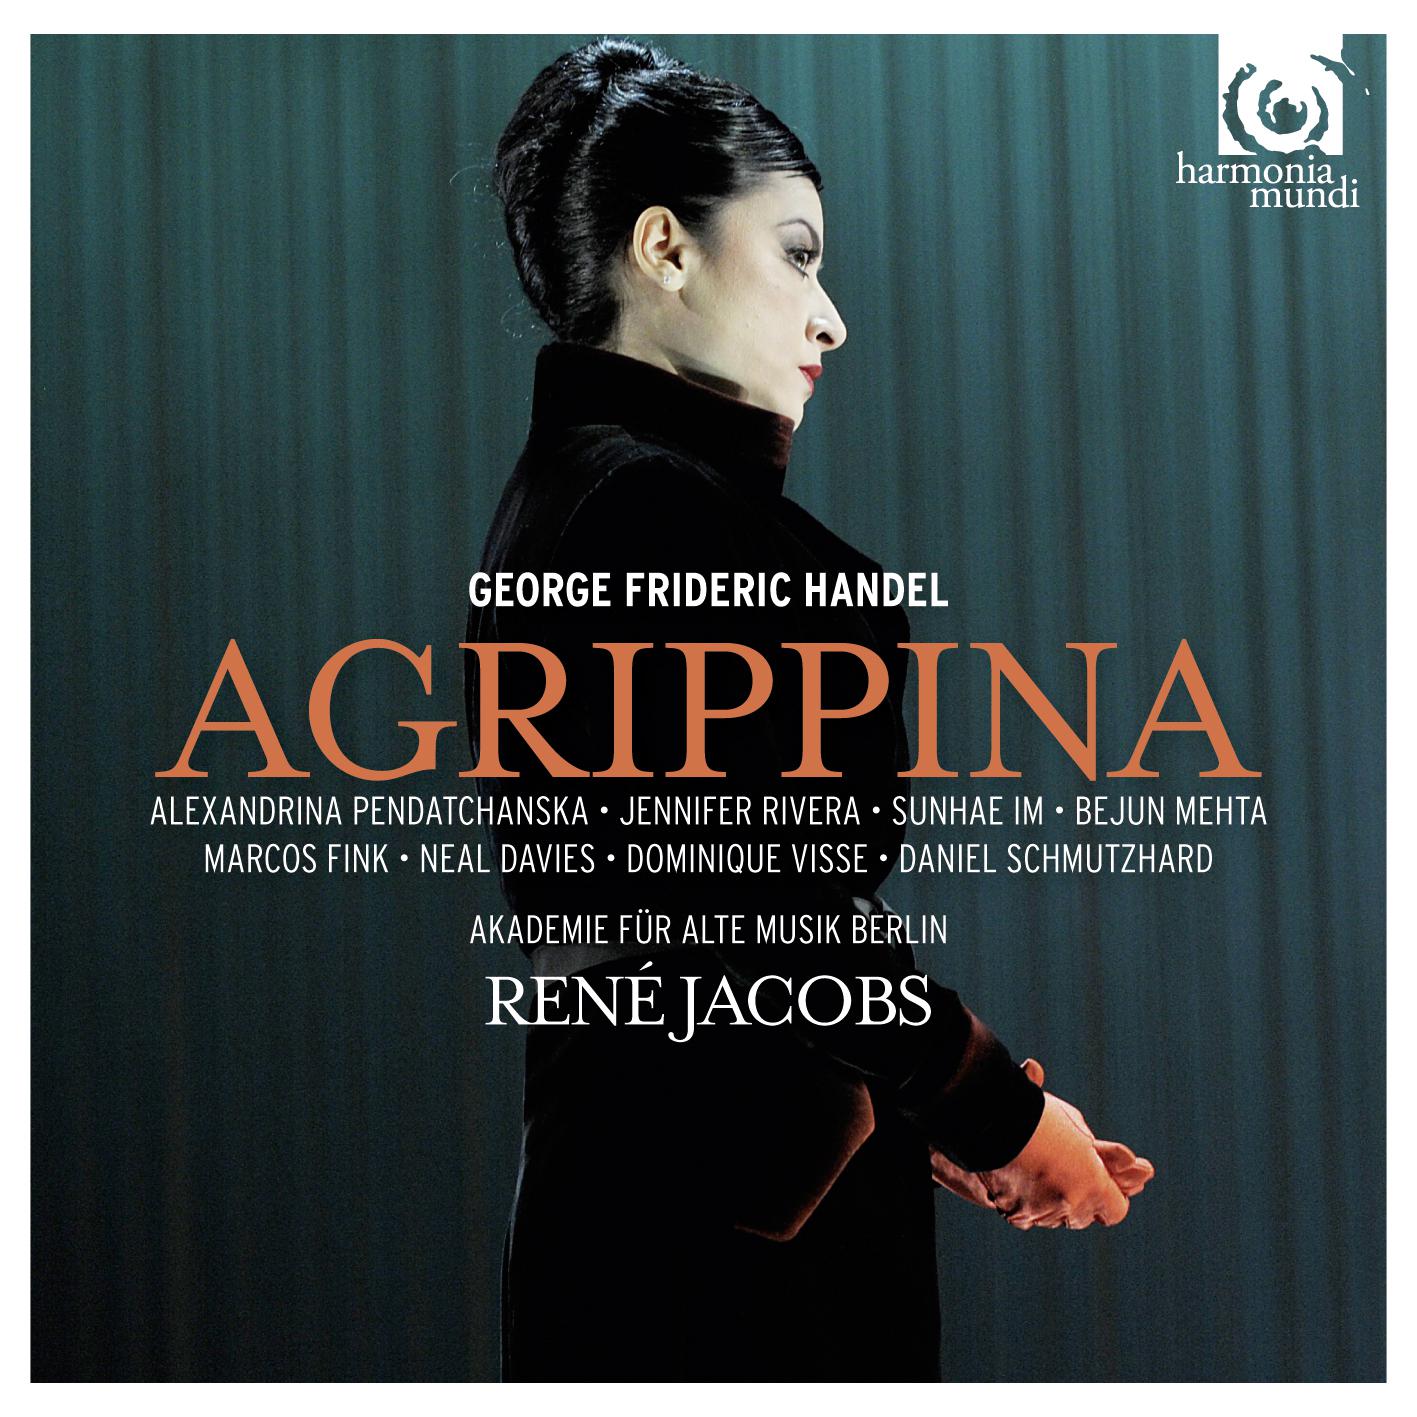 Agrippina: ATTO I, Sc. III: Aria Pallante "La mia sorte fortunata"